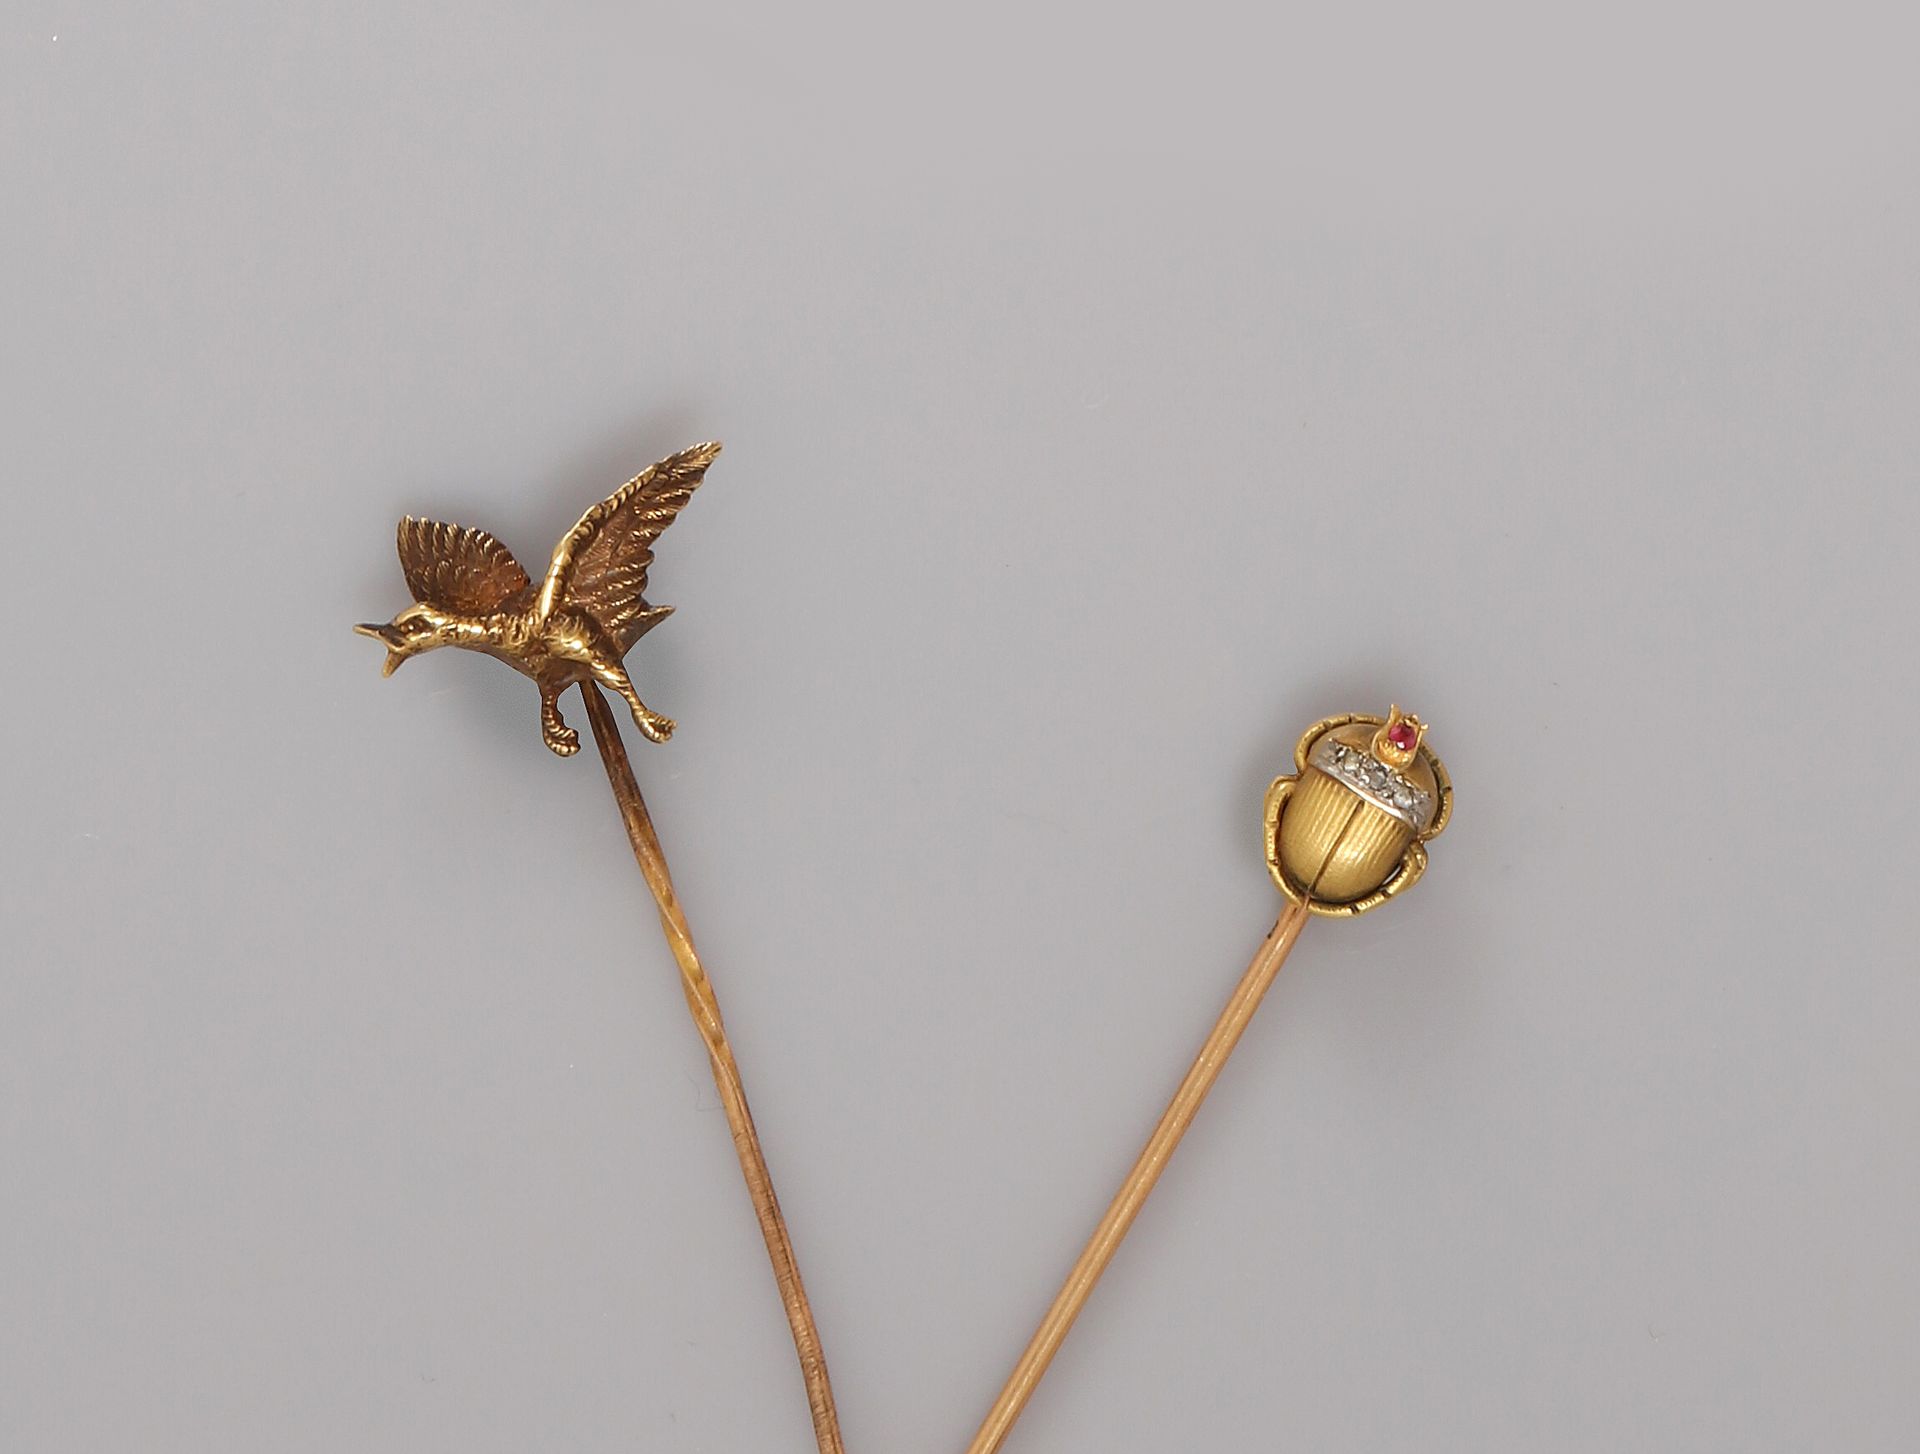 Null 两个黄金领带夹，750毫米，一个描绘了一只鸭子在飞行，另一个描绘了一只雕刻和镶嵌钻石的甲虫，红宝石头，19世纪末，重量：5.8克，毛重。